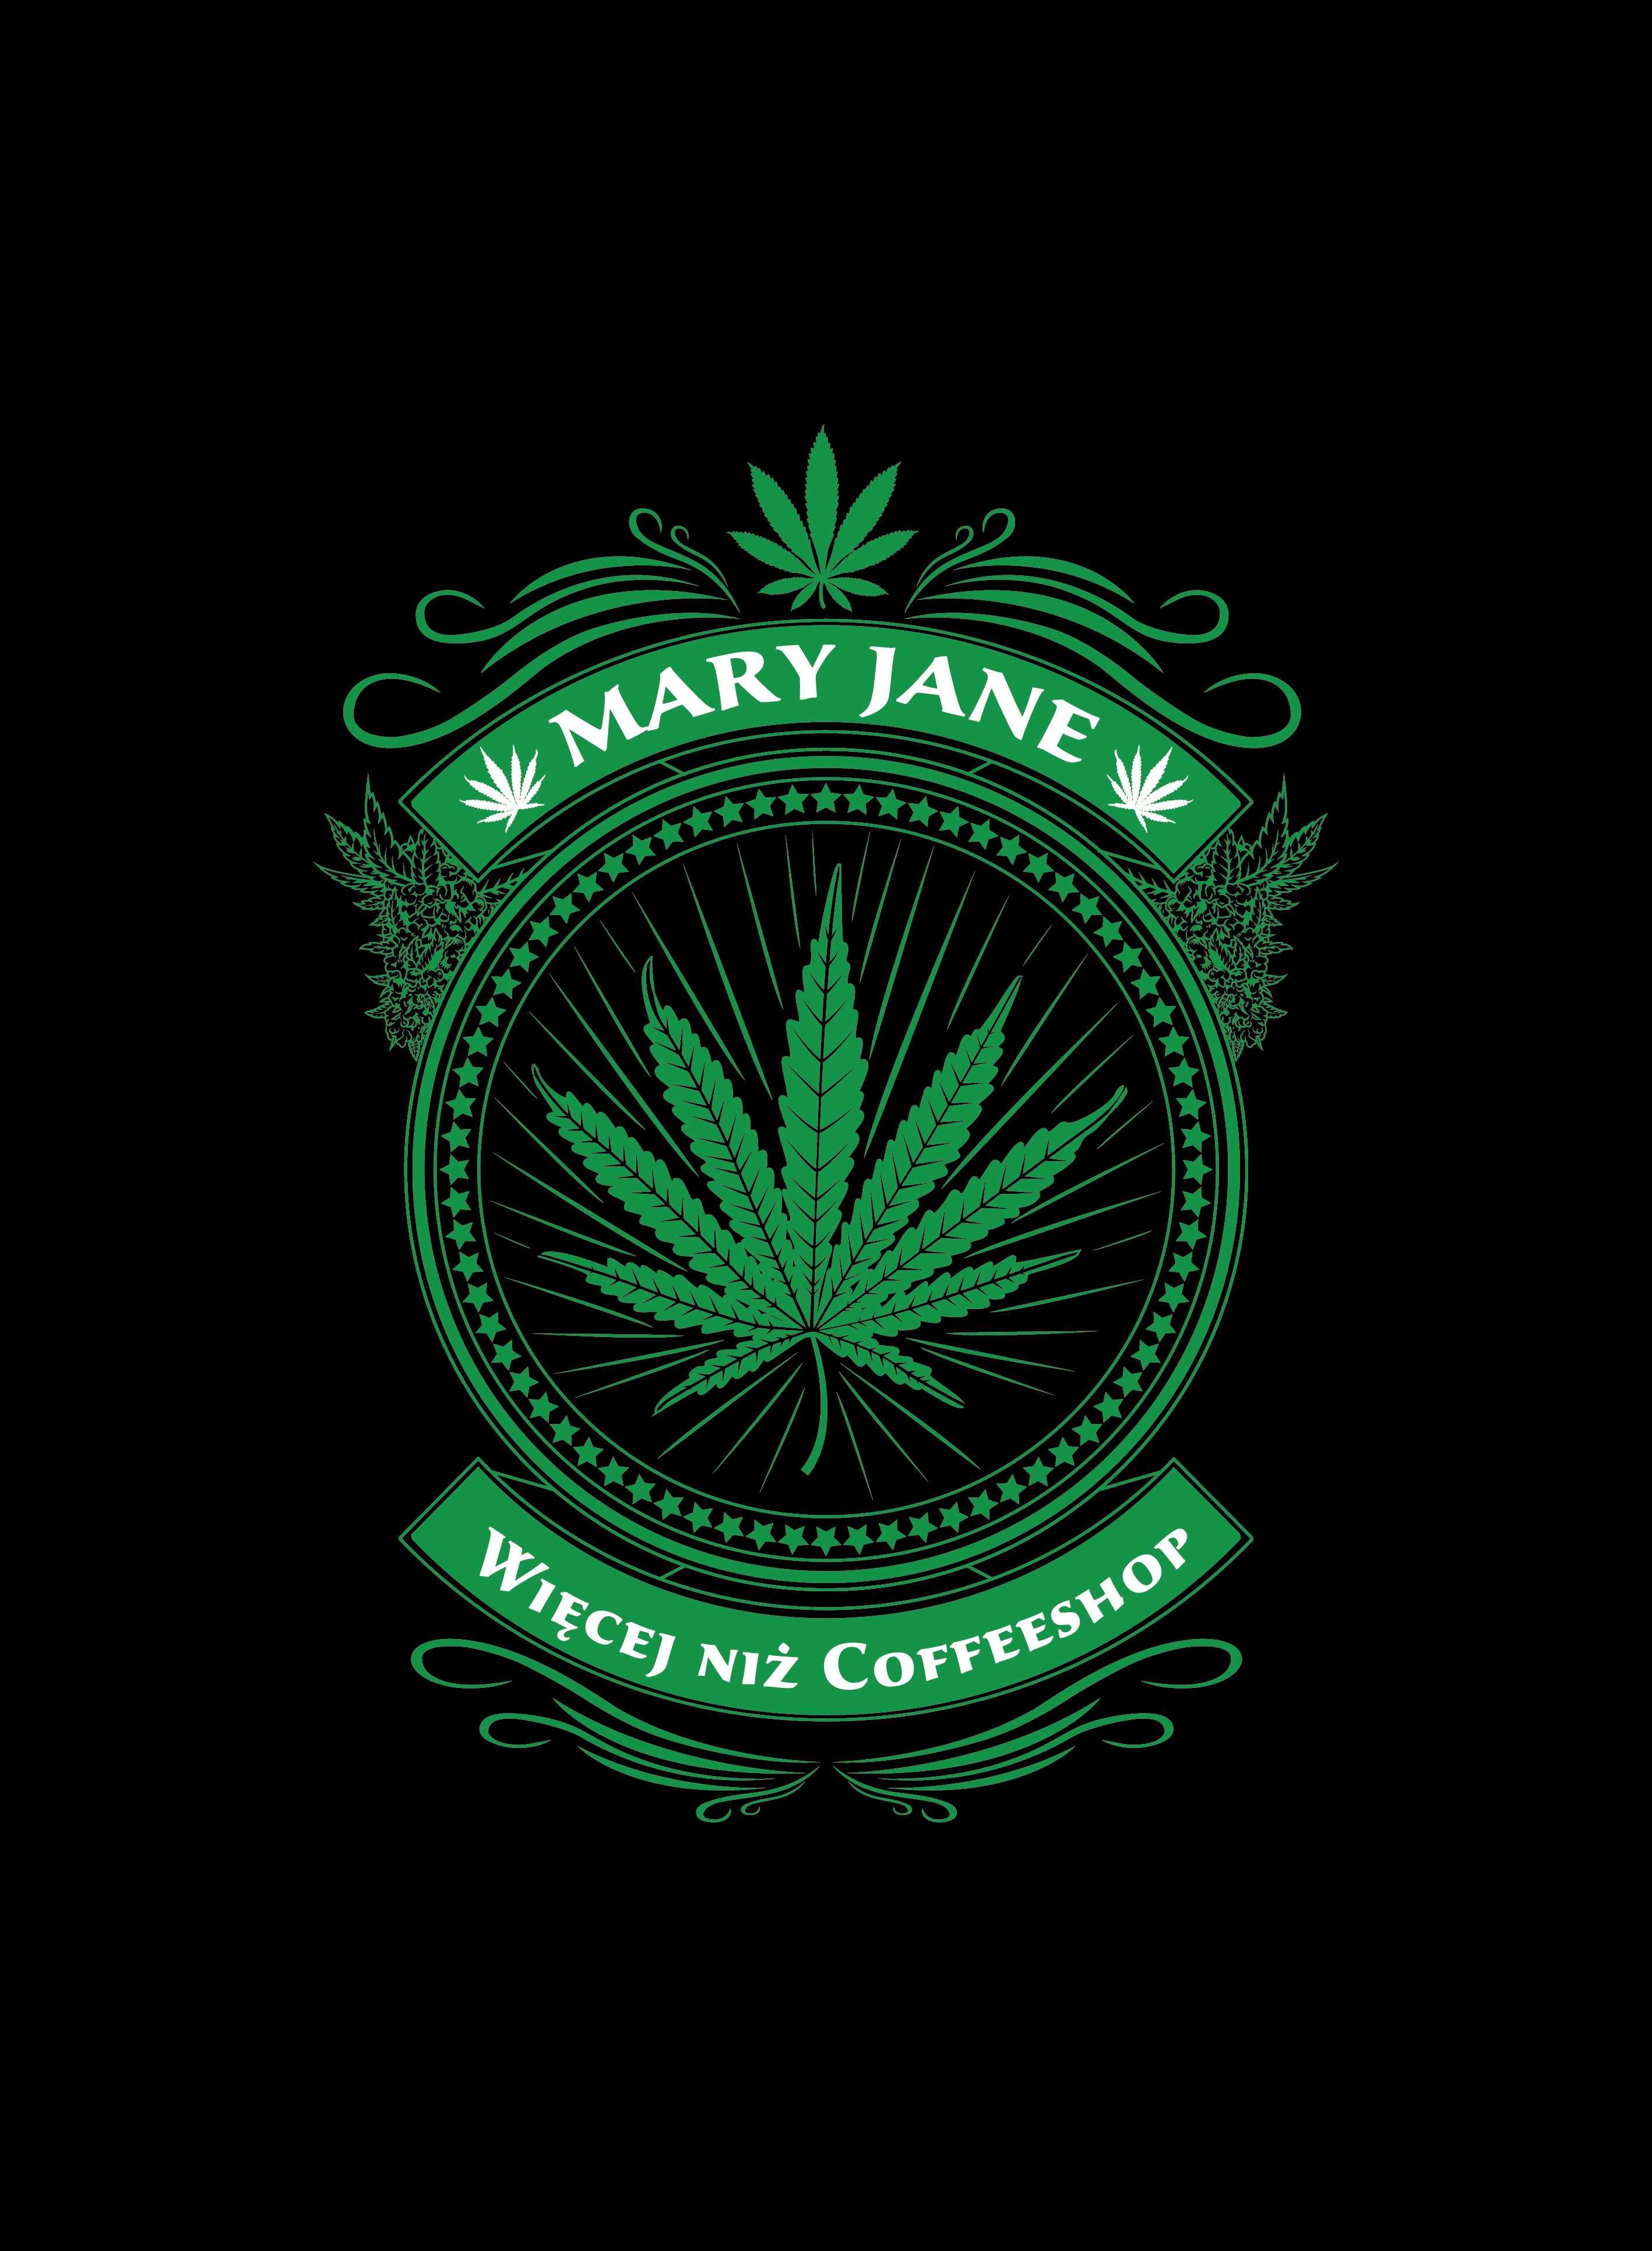 Mary Jane | Elektroniczna waga jubilerska do 500g. Dokładność 0,01g